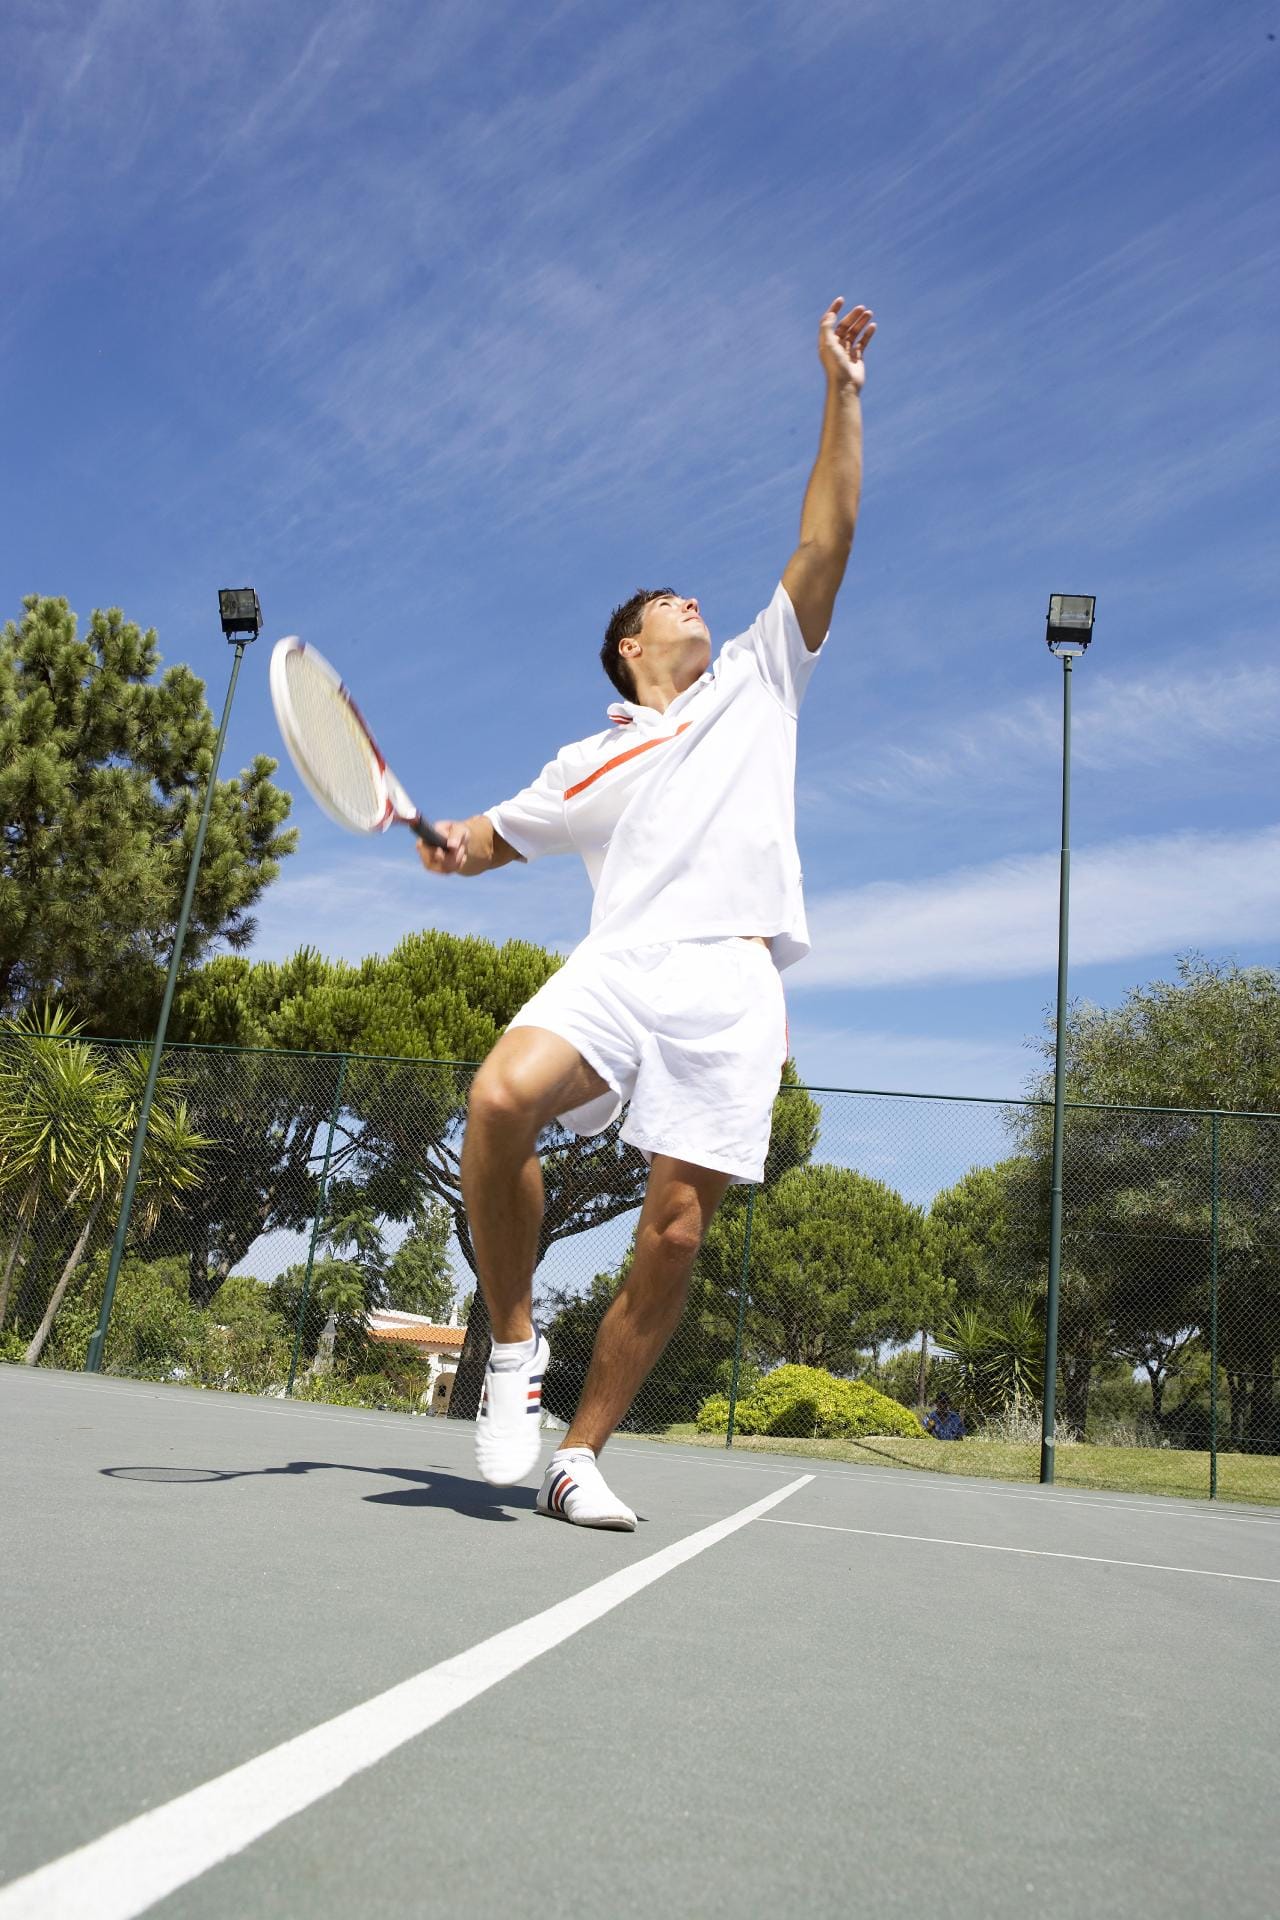 Tennis ist ab 50 nicht zu empfehlen – denn der Körper wird nur einseitig belastet. Wer in diesem Alter mit Ehrgeiz aufschlagen will, muss den ganzen Körper zusätzlich mit Kraftsport trainieren oder intensiv schwimmen gehen.